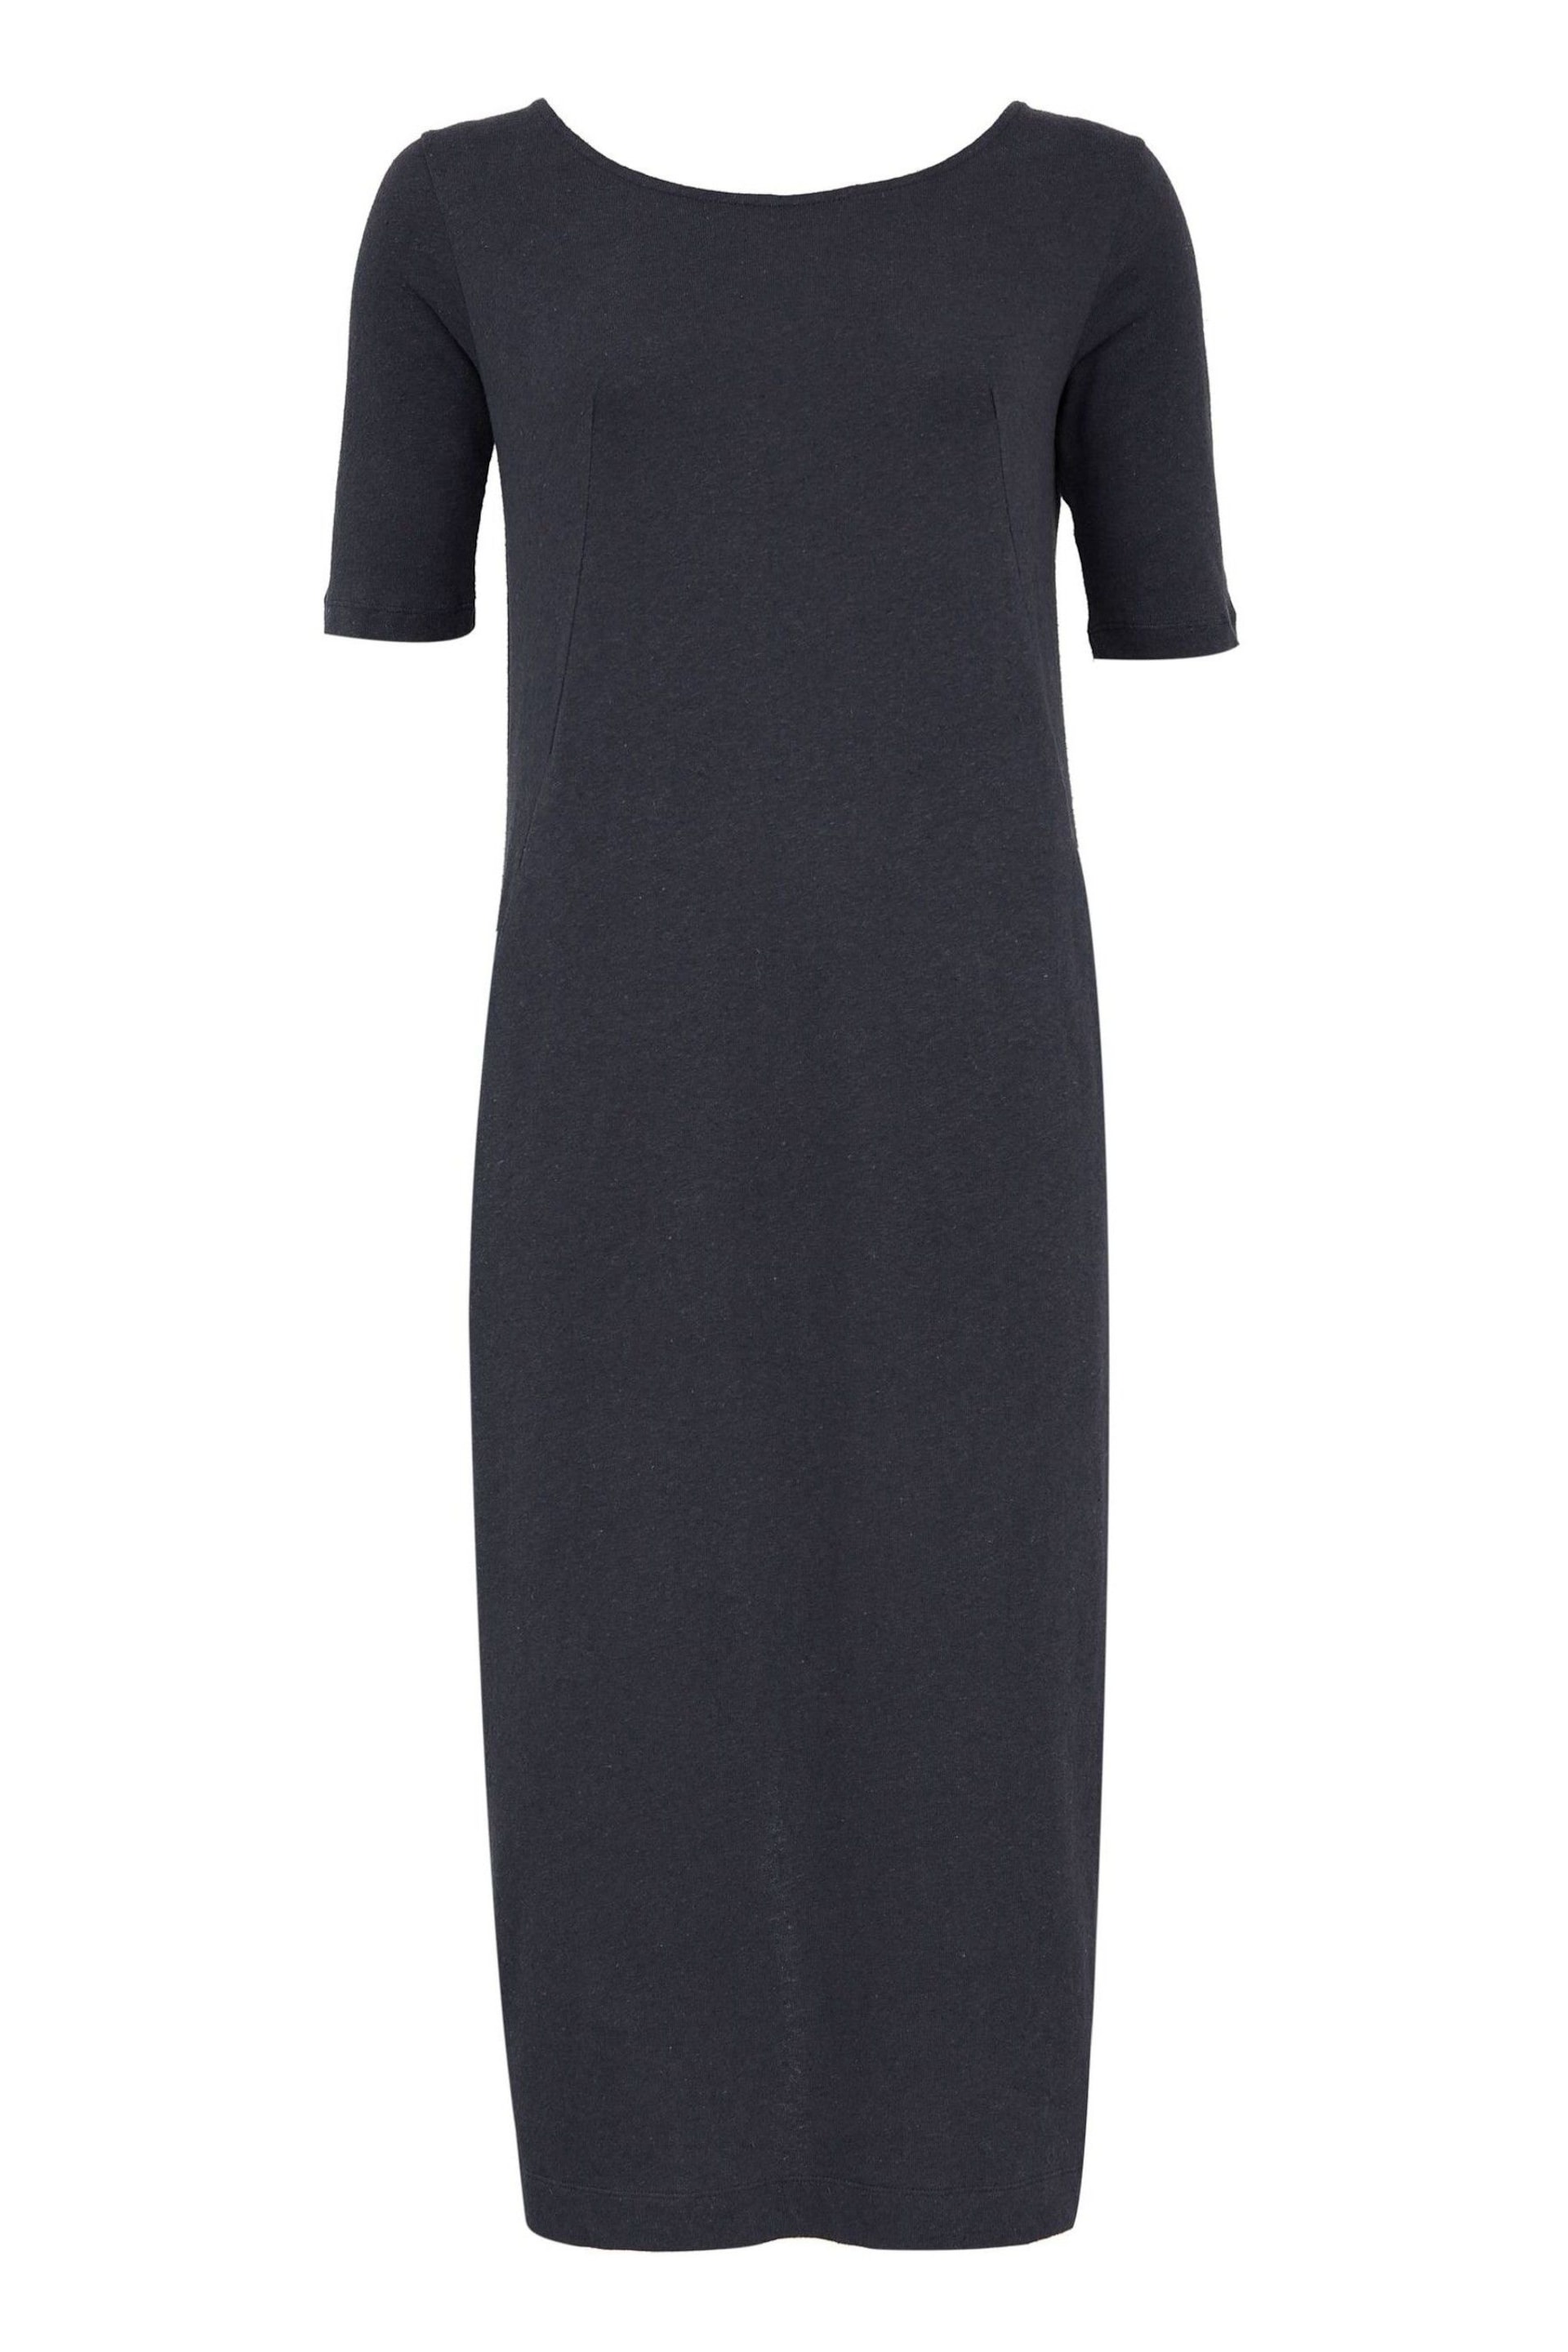 Celtic & Co. Navy Blue Linen/Cotton Button Back Dress - Image 3 of 5